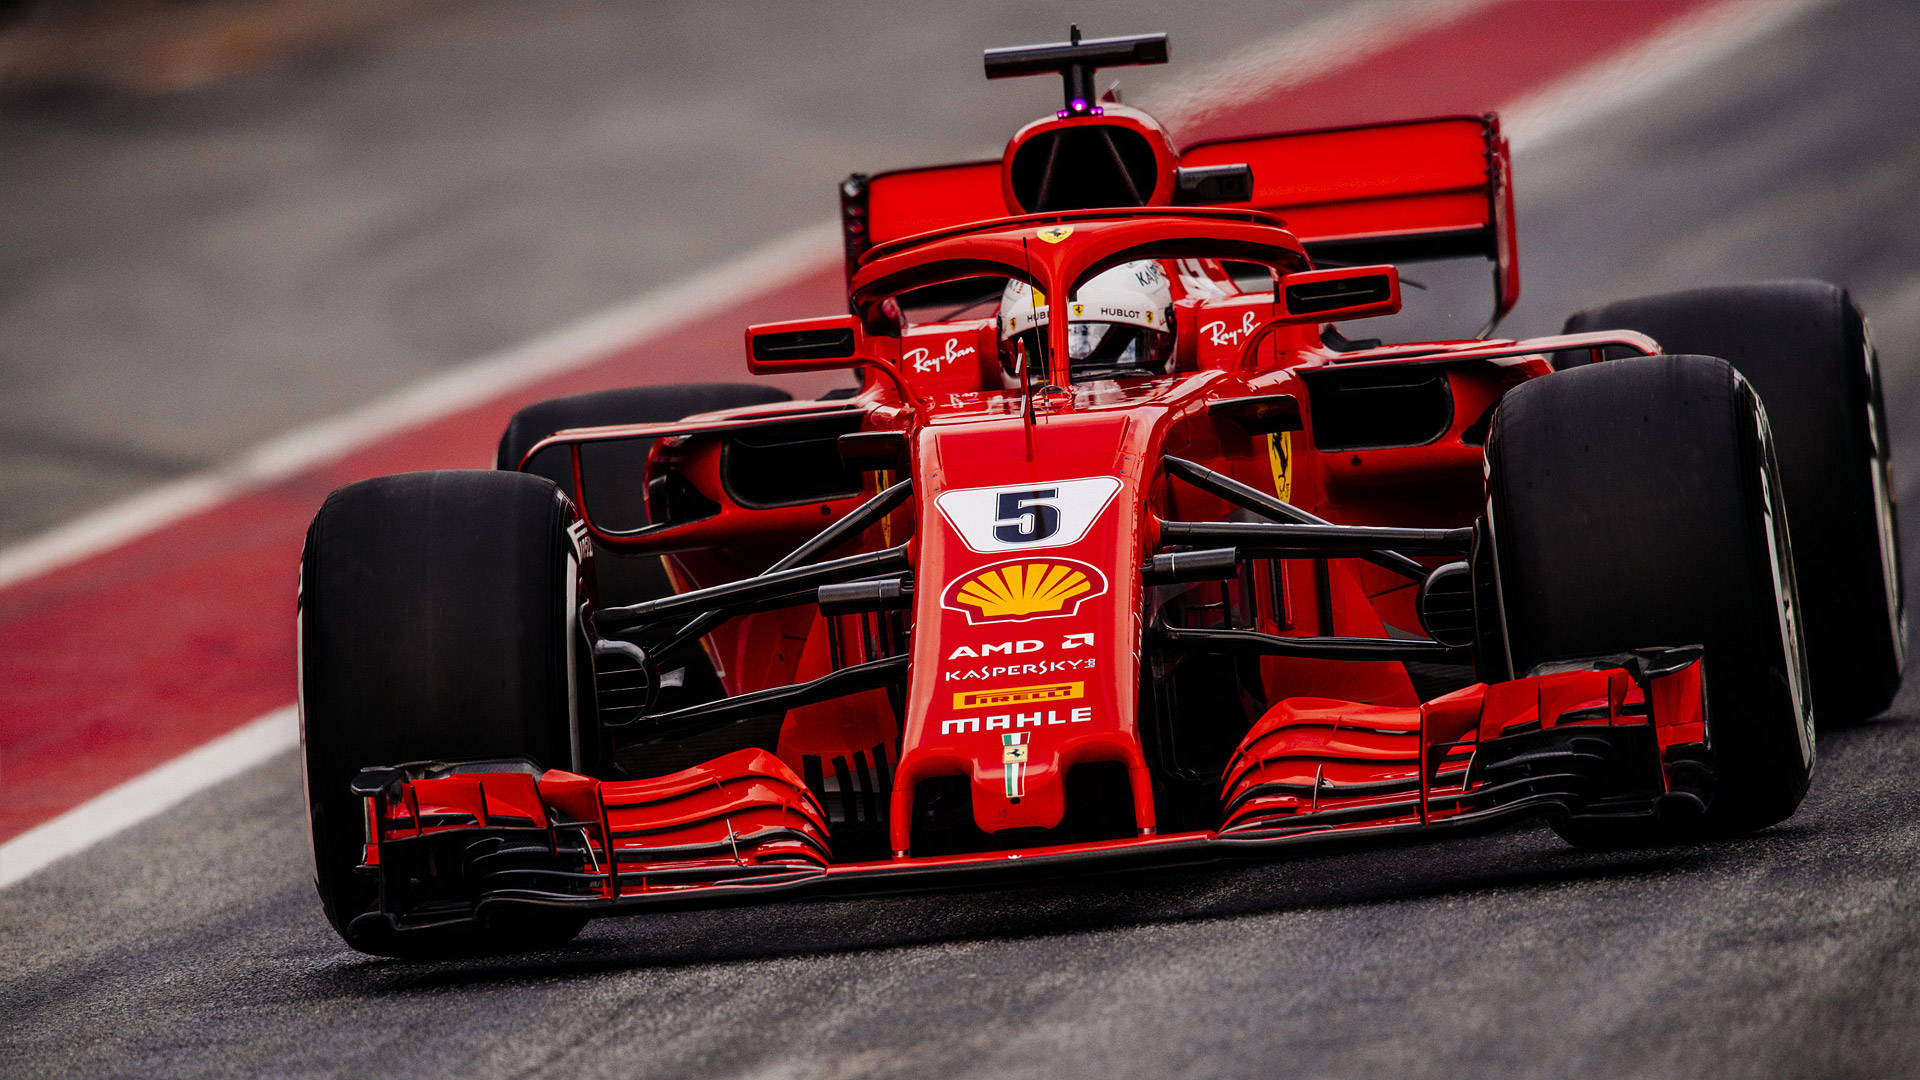 Top 999+ Ferrari F1 2018 Wallpaper Full HD, 4K✅Free to Use